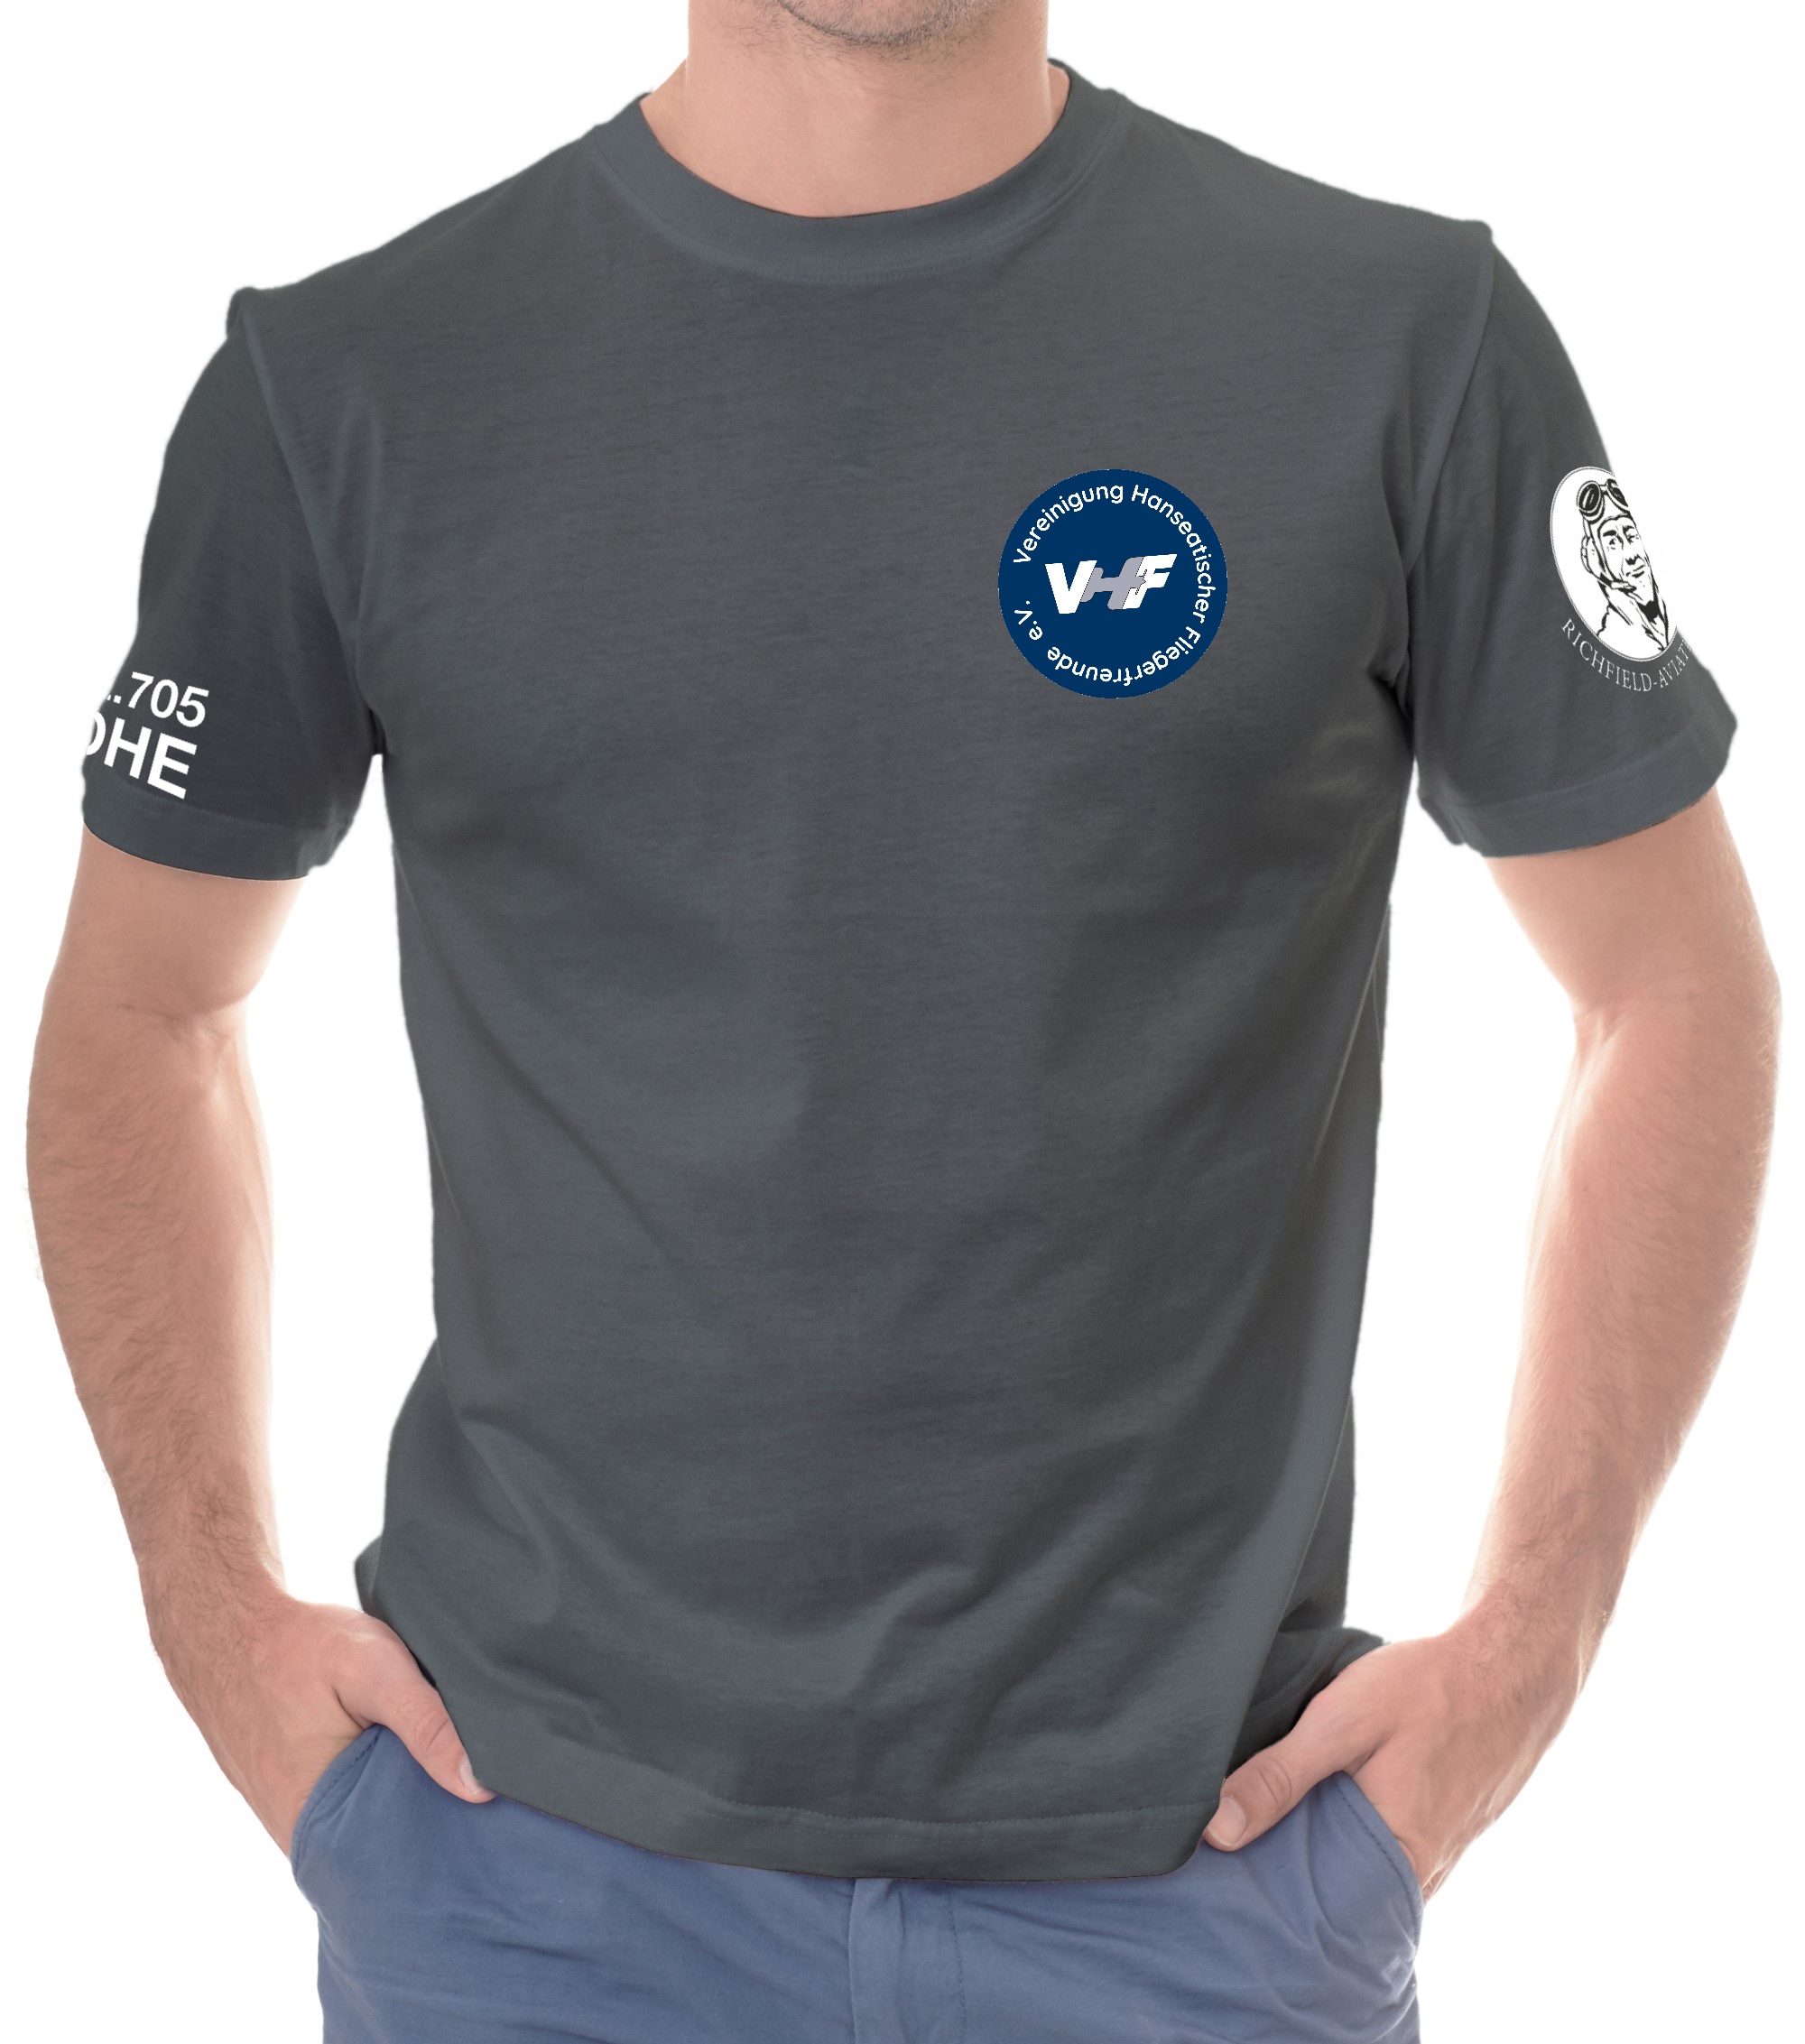 Herren T-Shirt VHF e.V.